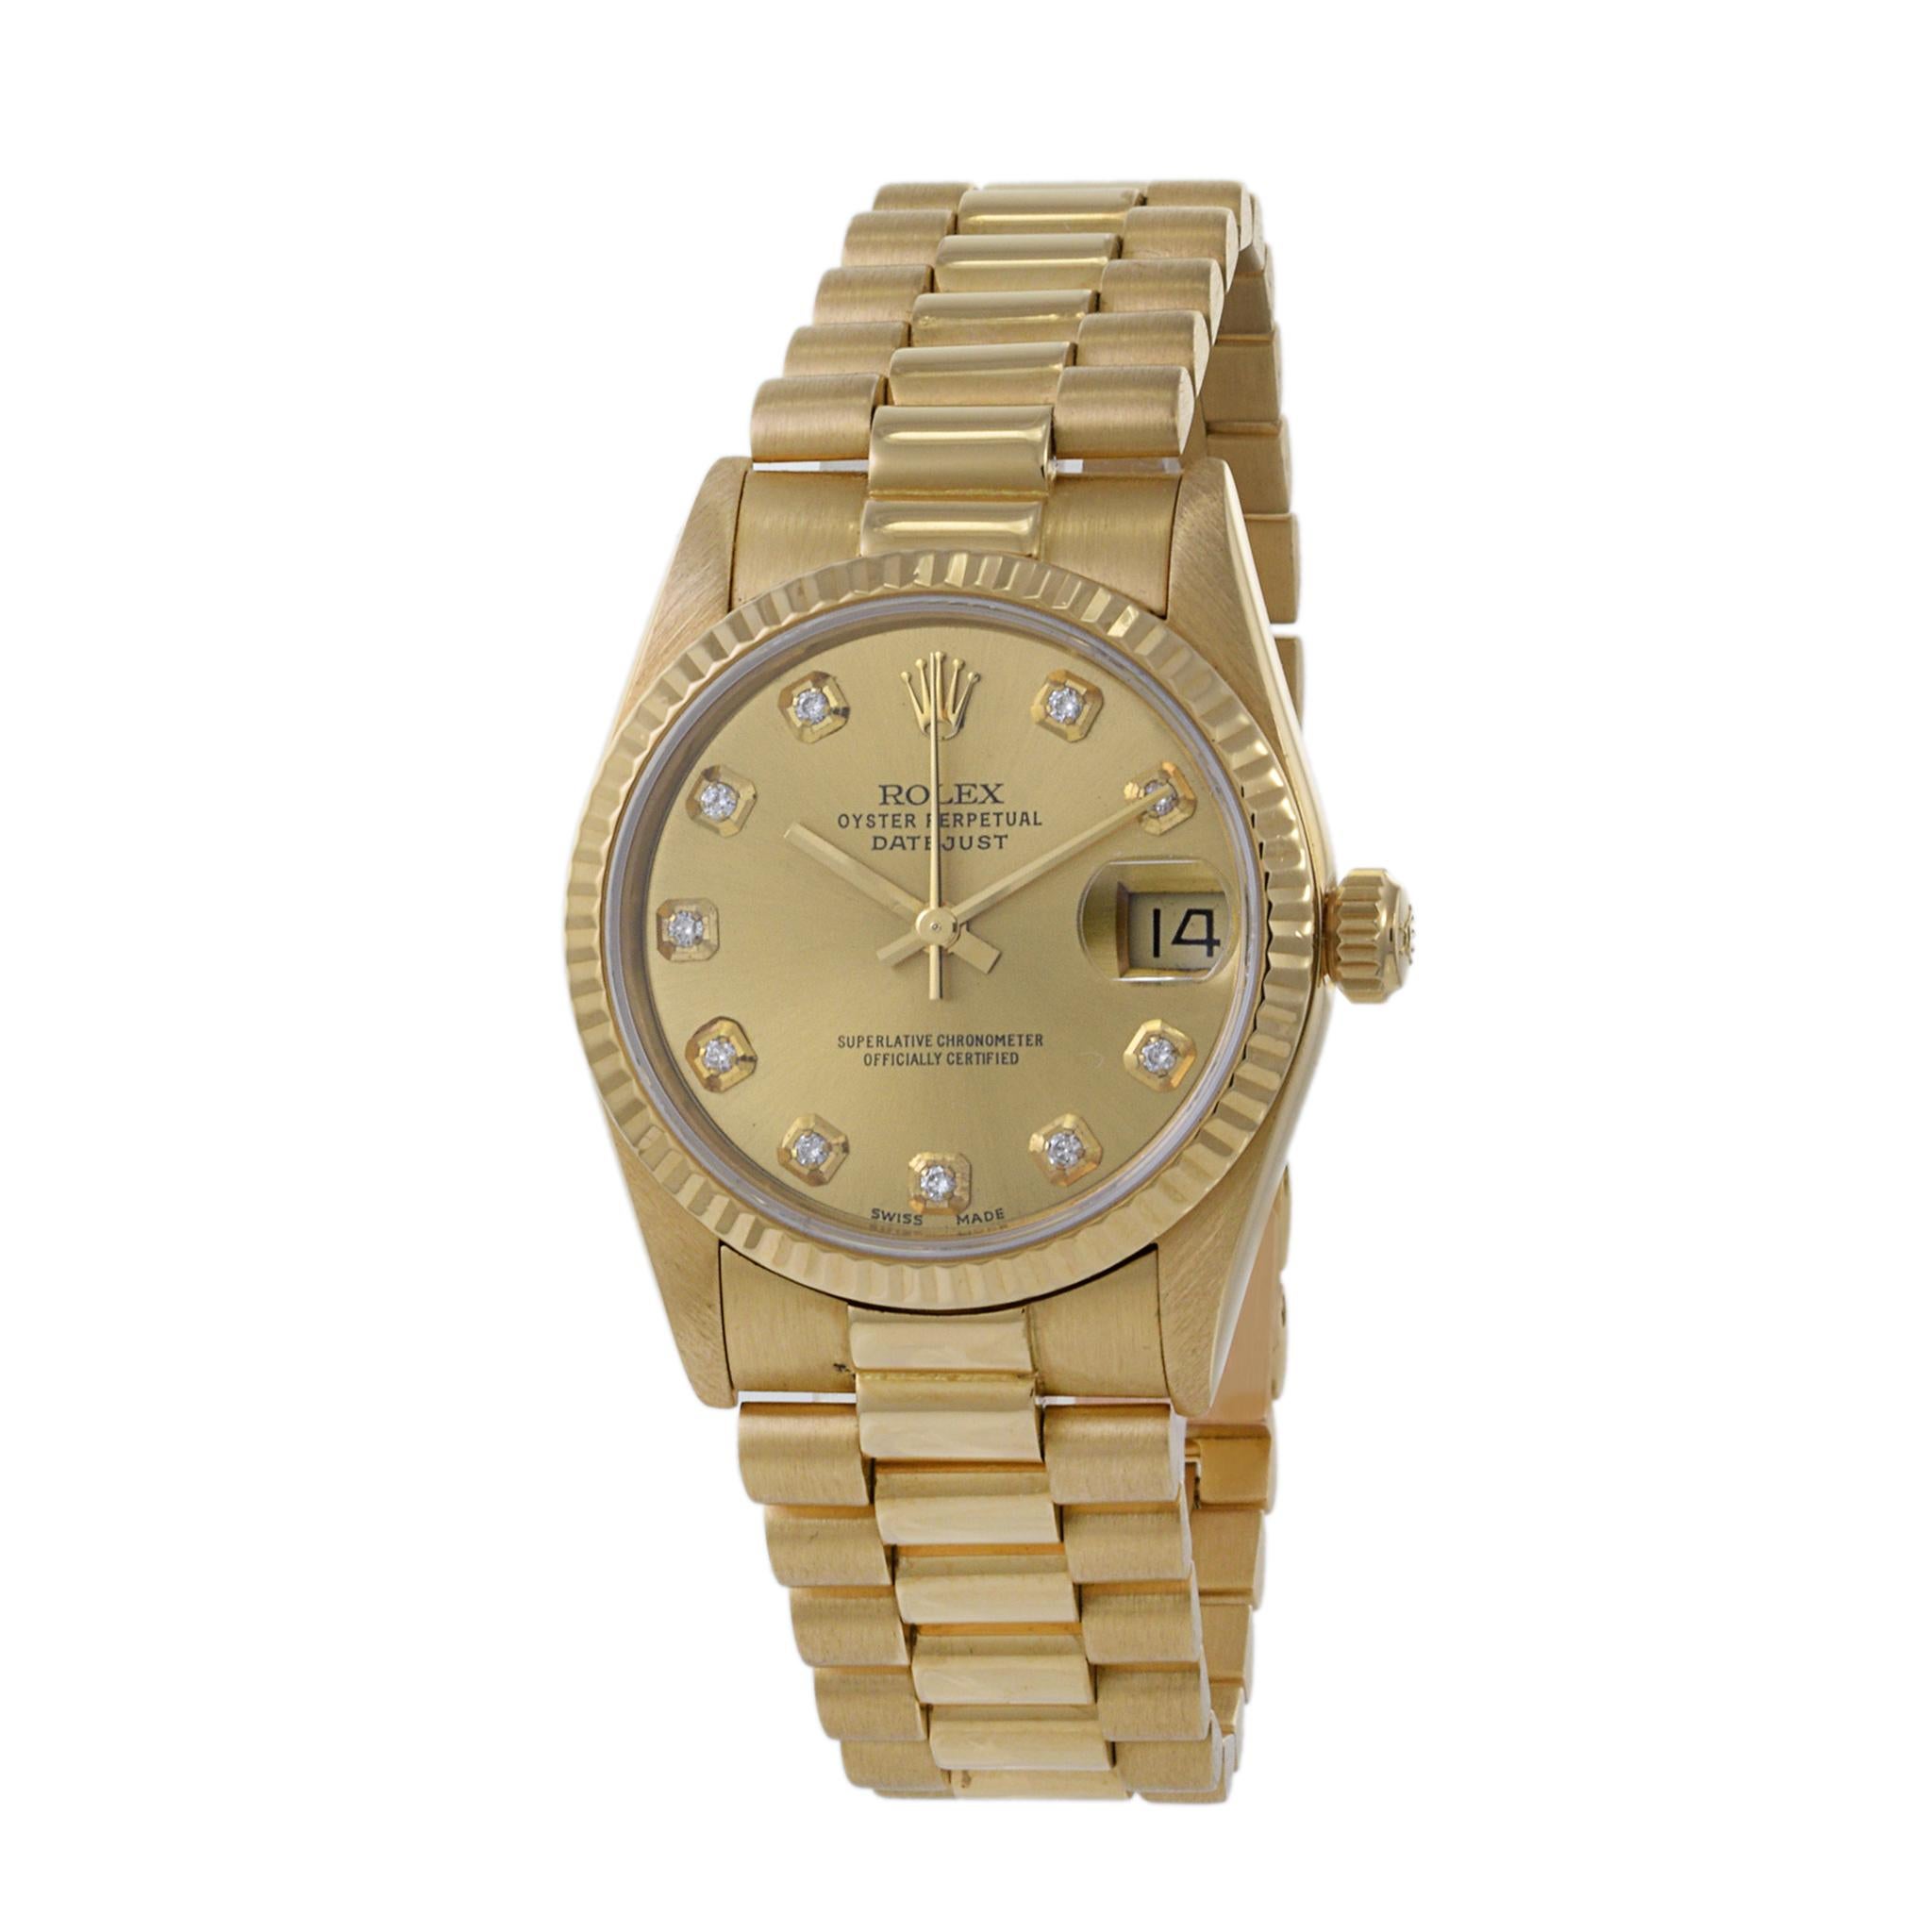 Dies ist ein großer Zustand 1986 Rolex 31mm Datejust Referenz 68278 in 18K Gelbgold. Diese Uhr ist ein Modell mit Schnellverstellung des Datums.

Das Zifferblatt hat werkseitig gesetzte Diamantmarker. Das Originalarmband ist im Präsidentschaftsstil